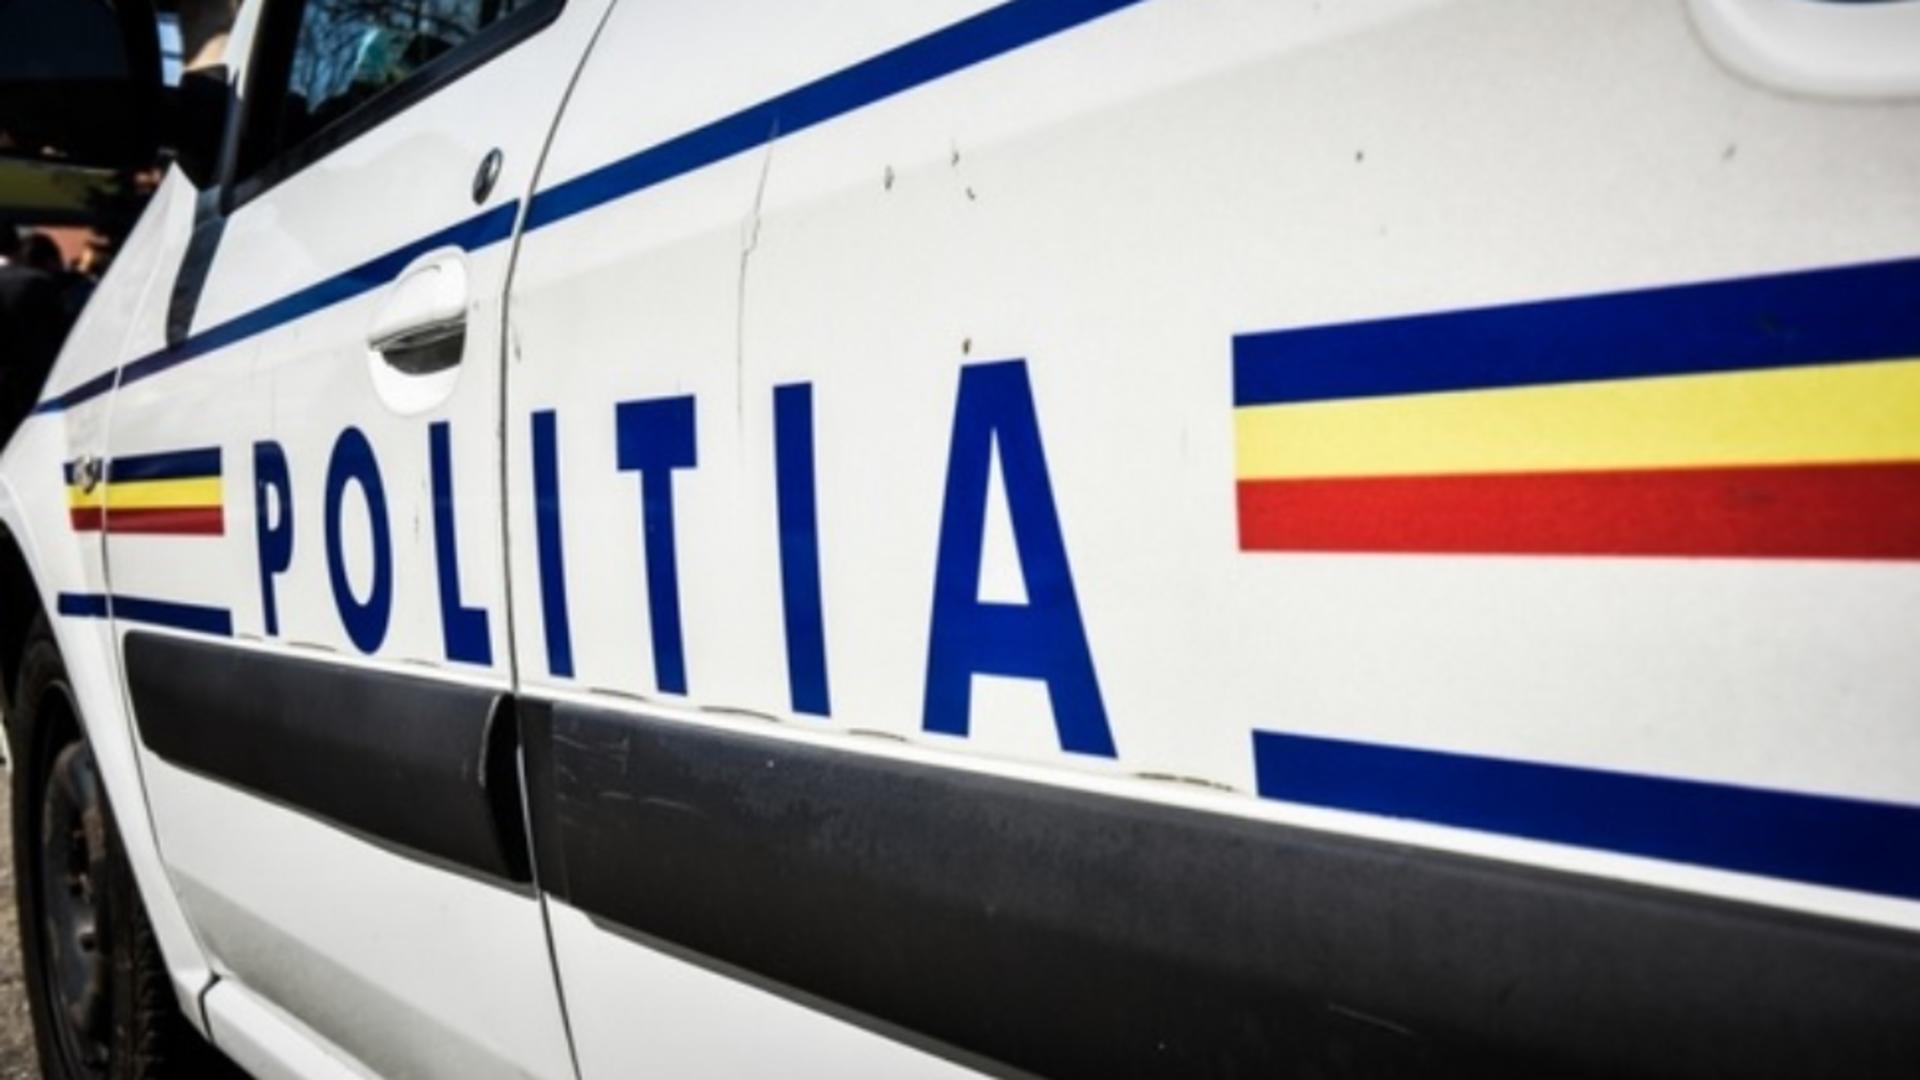 Poliția Cluj, explicații halucinante despre filmarea în care un agent calcă pe cap un individ încătușat: "S-a împiedicat"